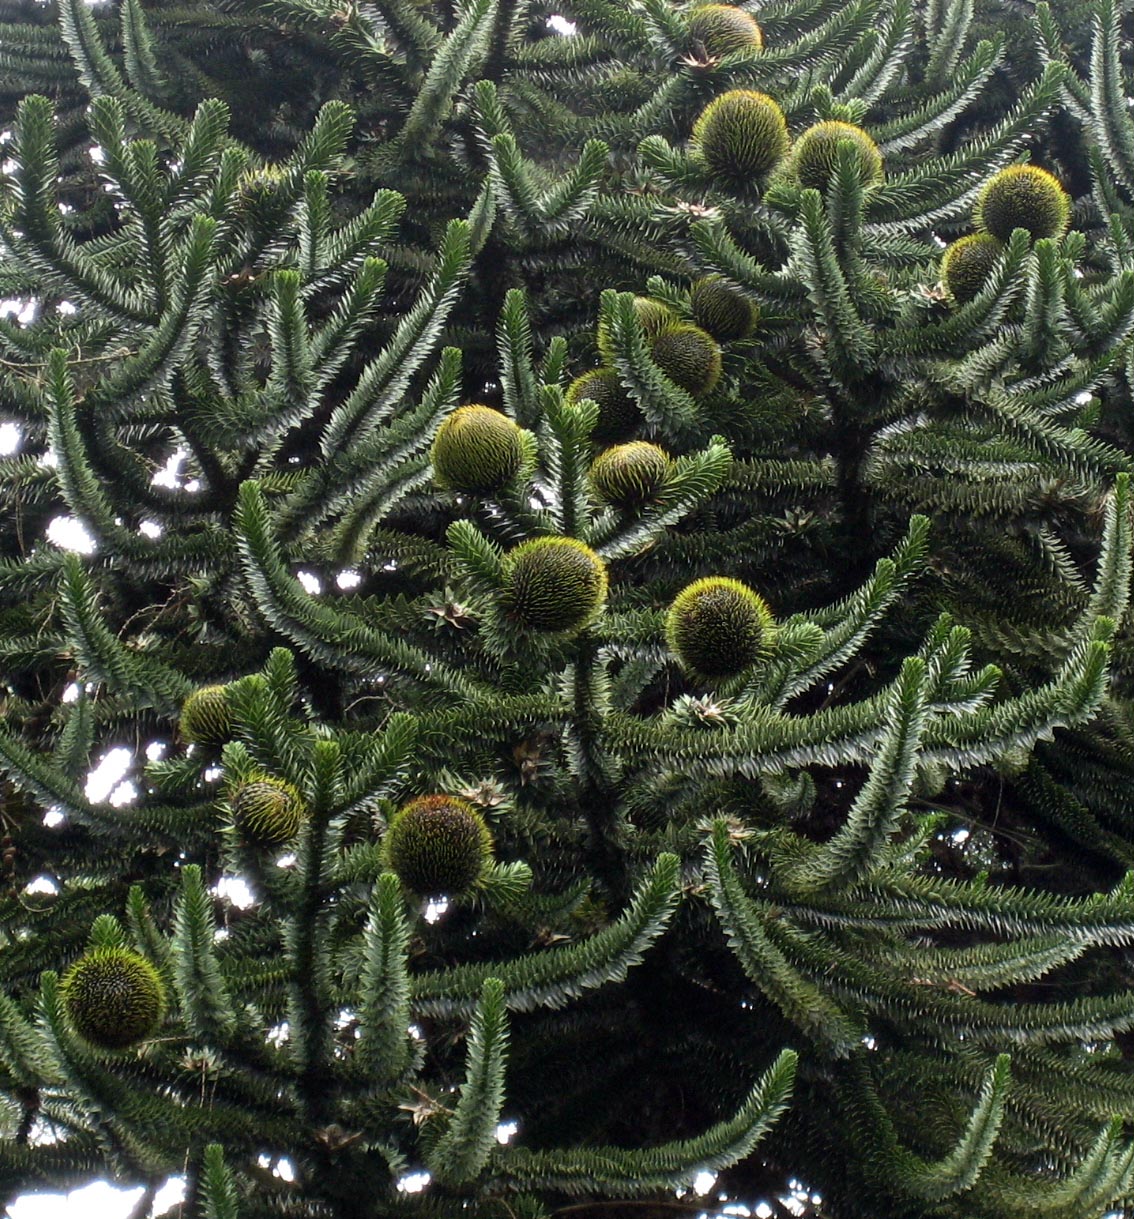 Araucaria araucana Female cones